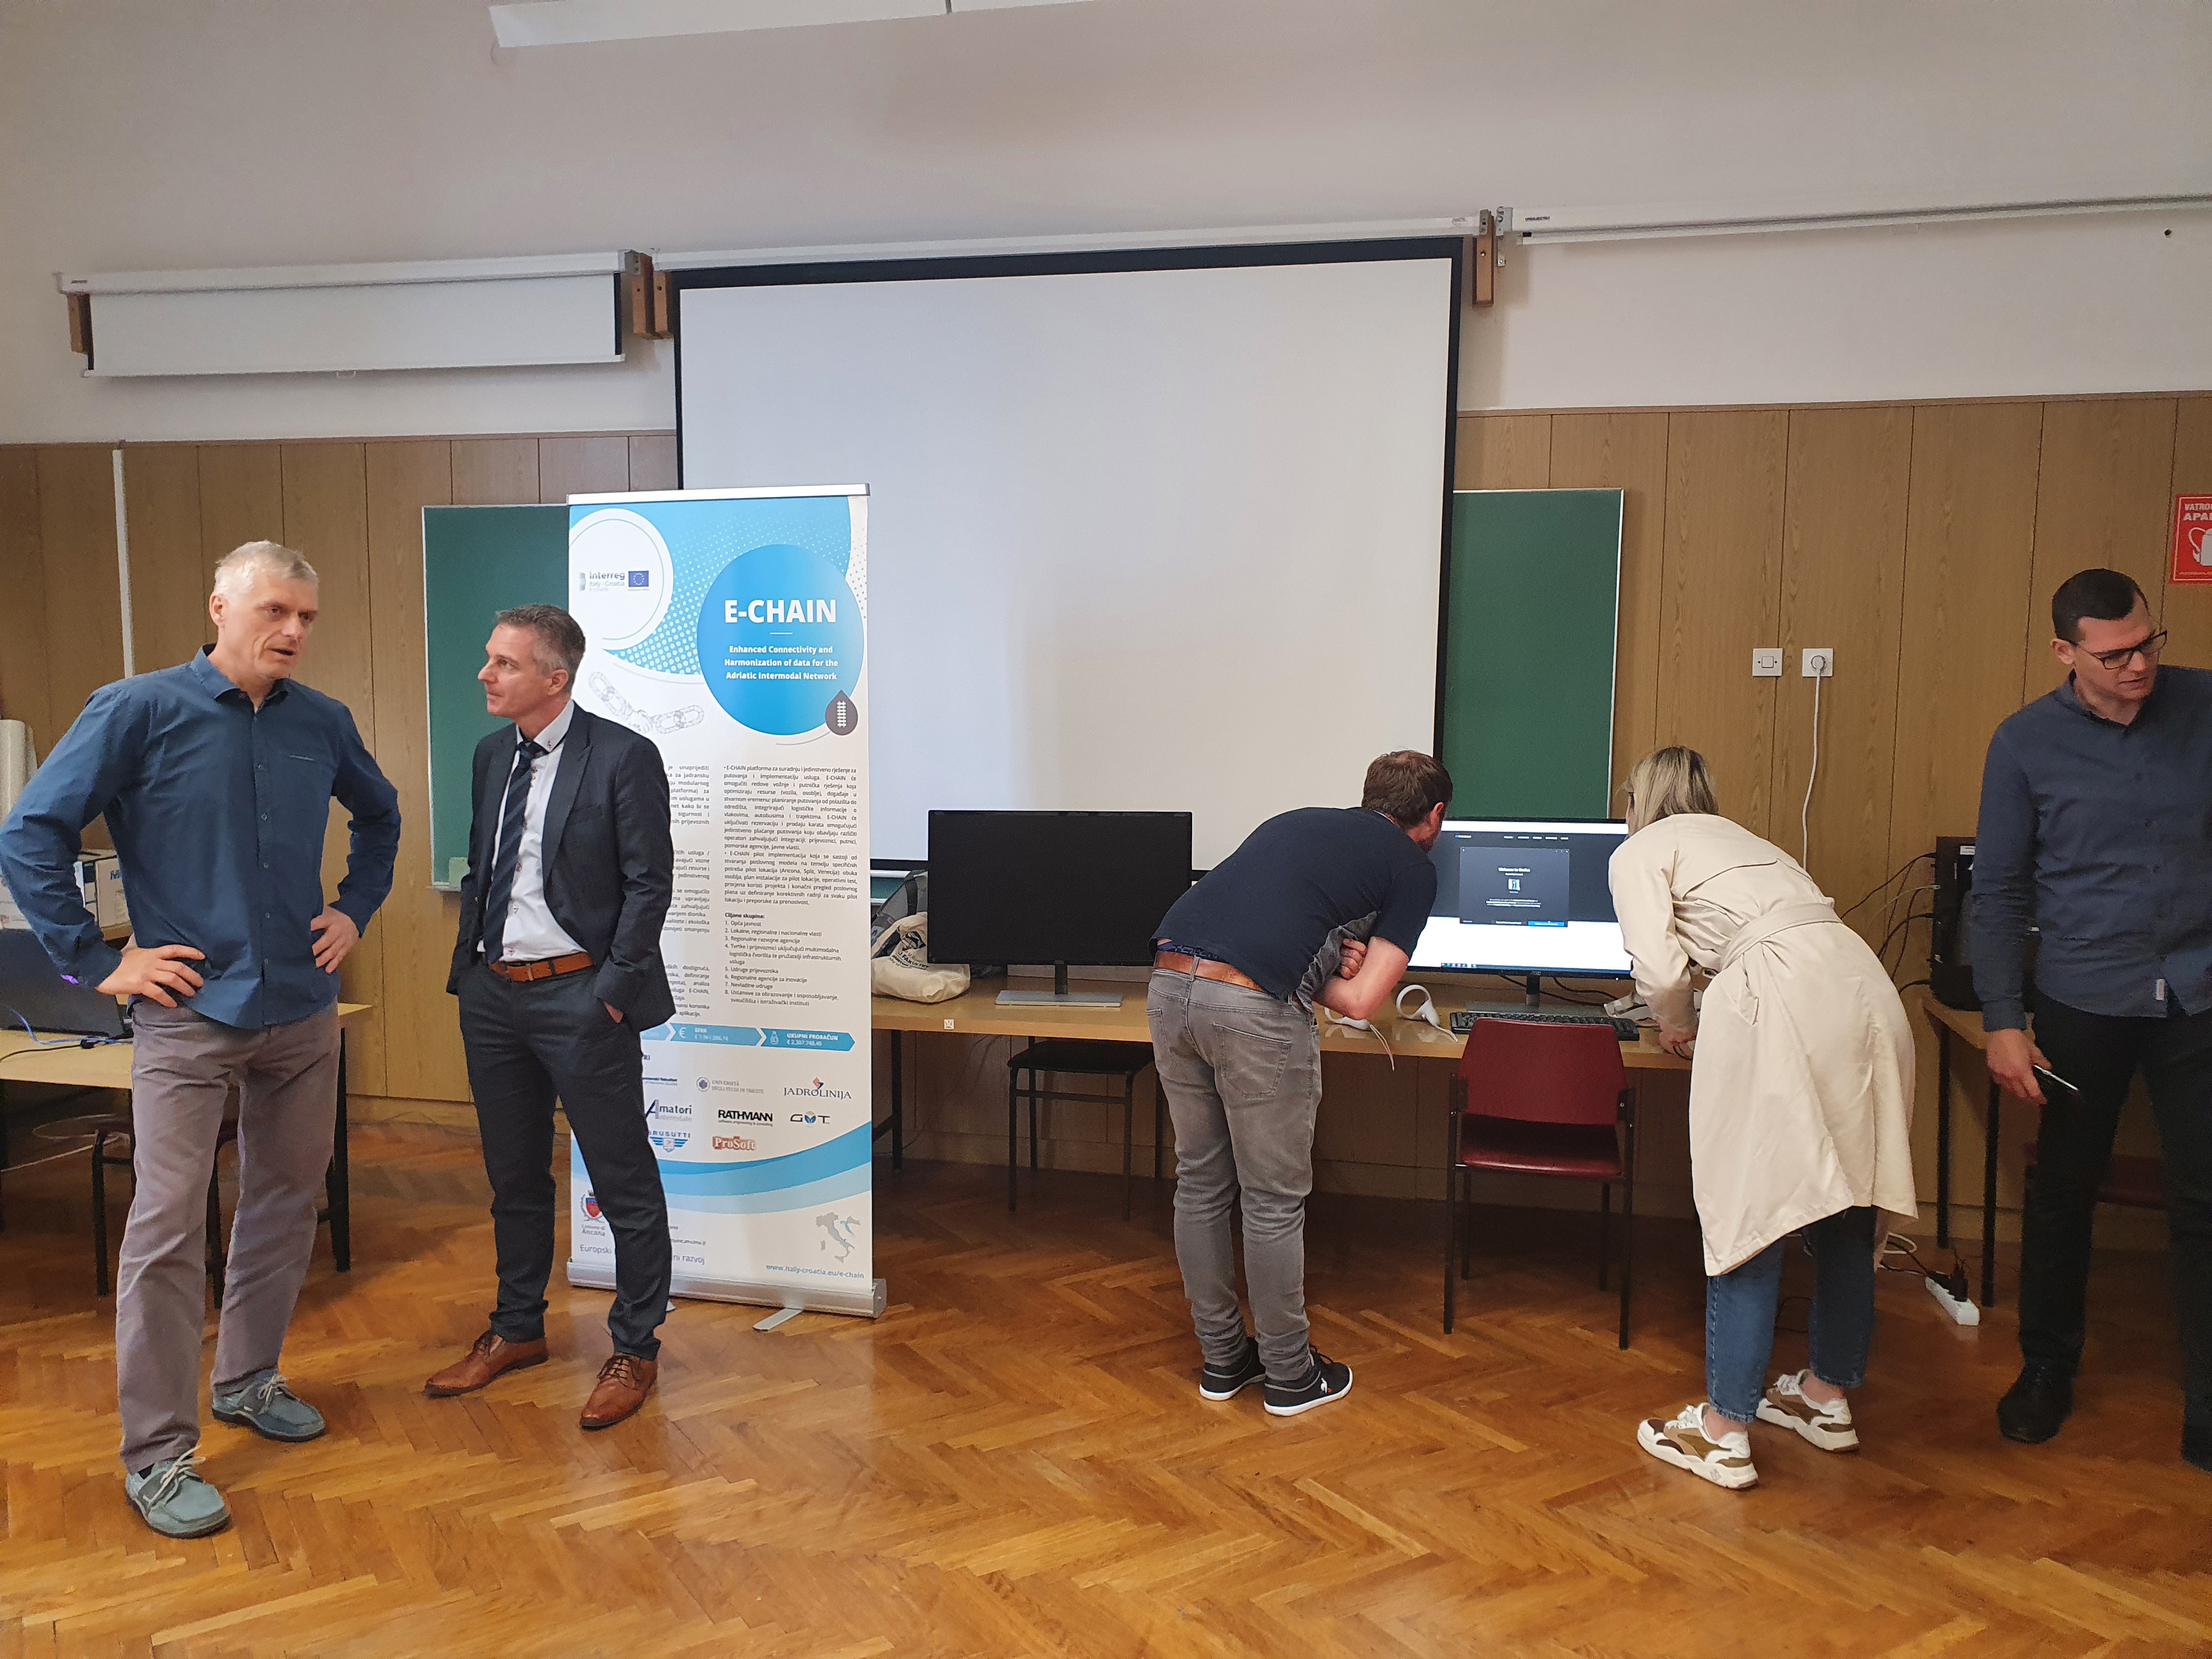 Presentation of the E-CHAIN project at the Science Festival 2022 in Rijeka